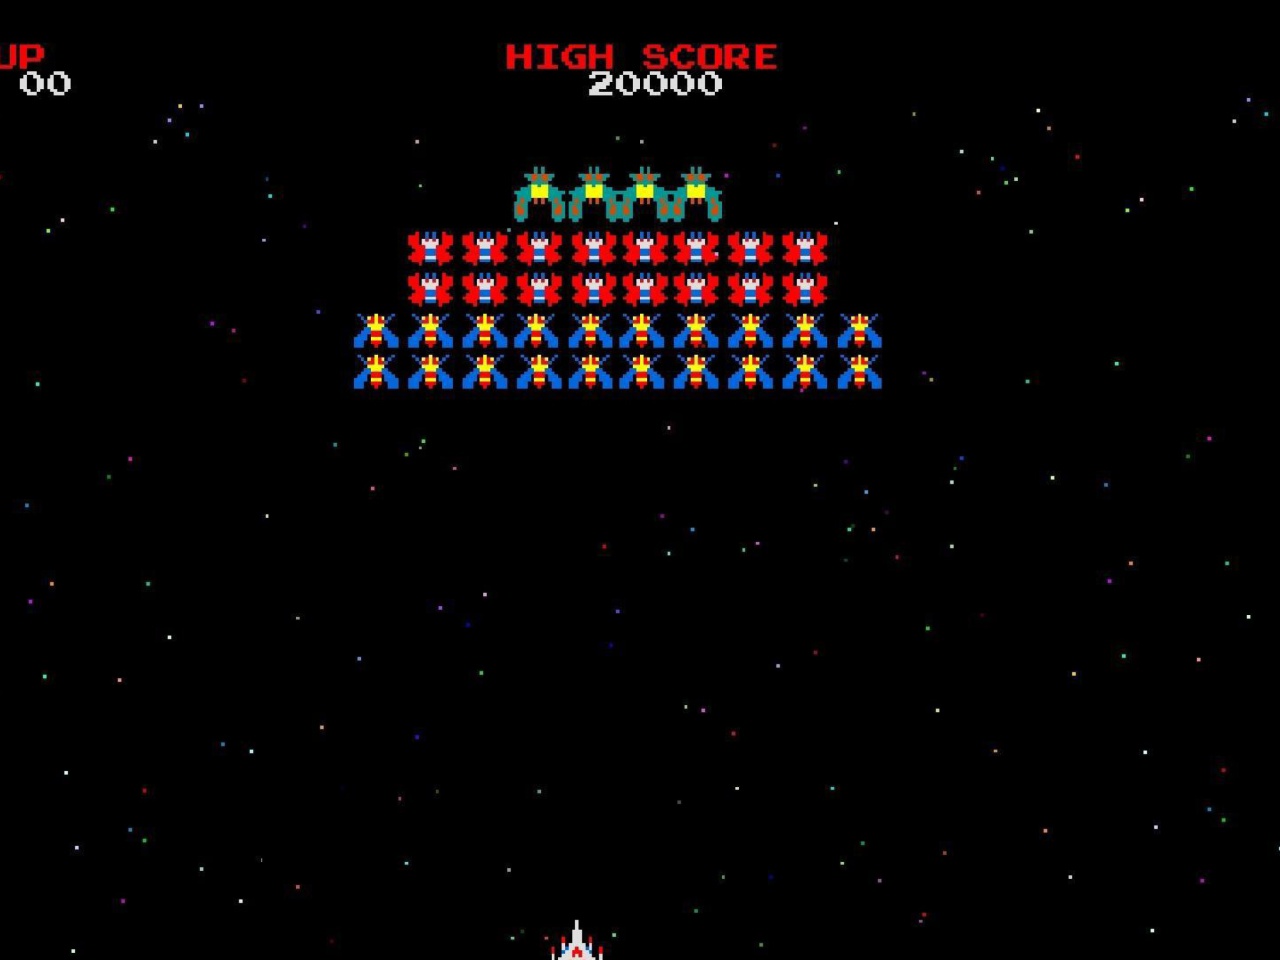 Das Galaxian Galaga Nintendo Arcade Game Wallpaper 1280x960